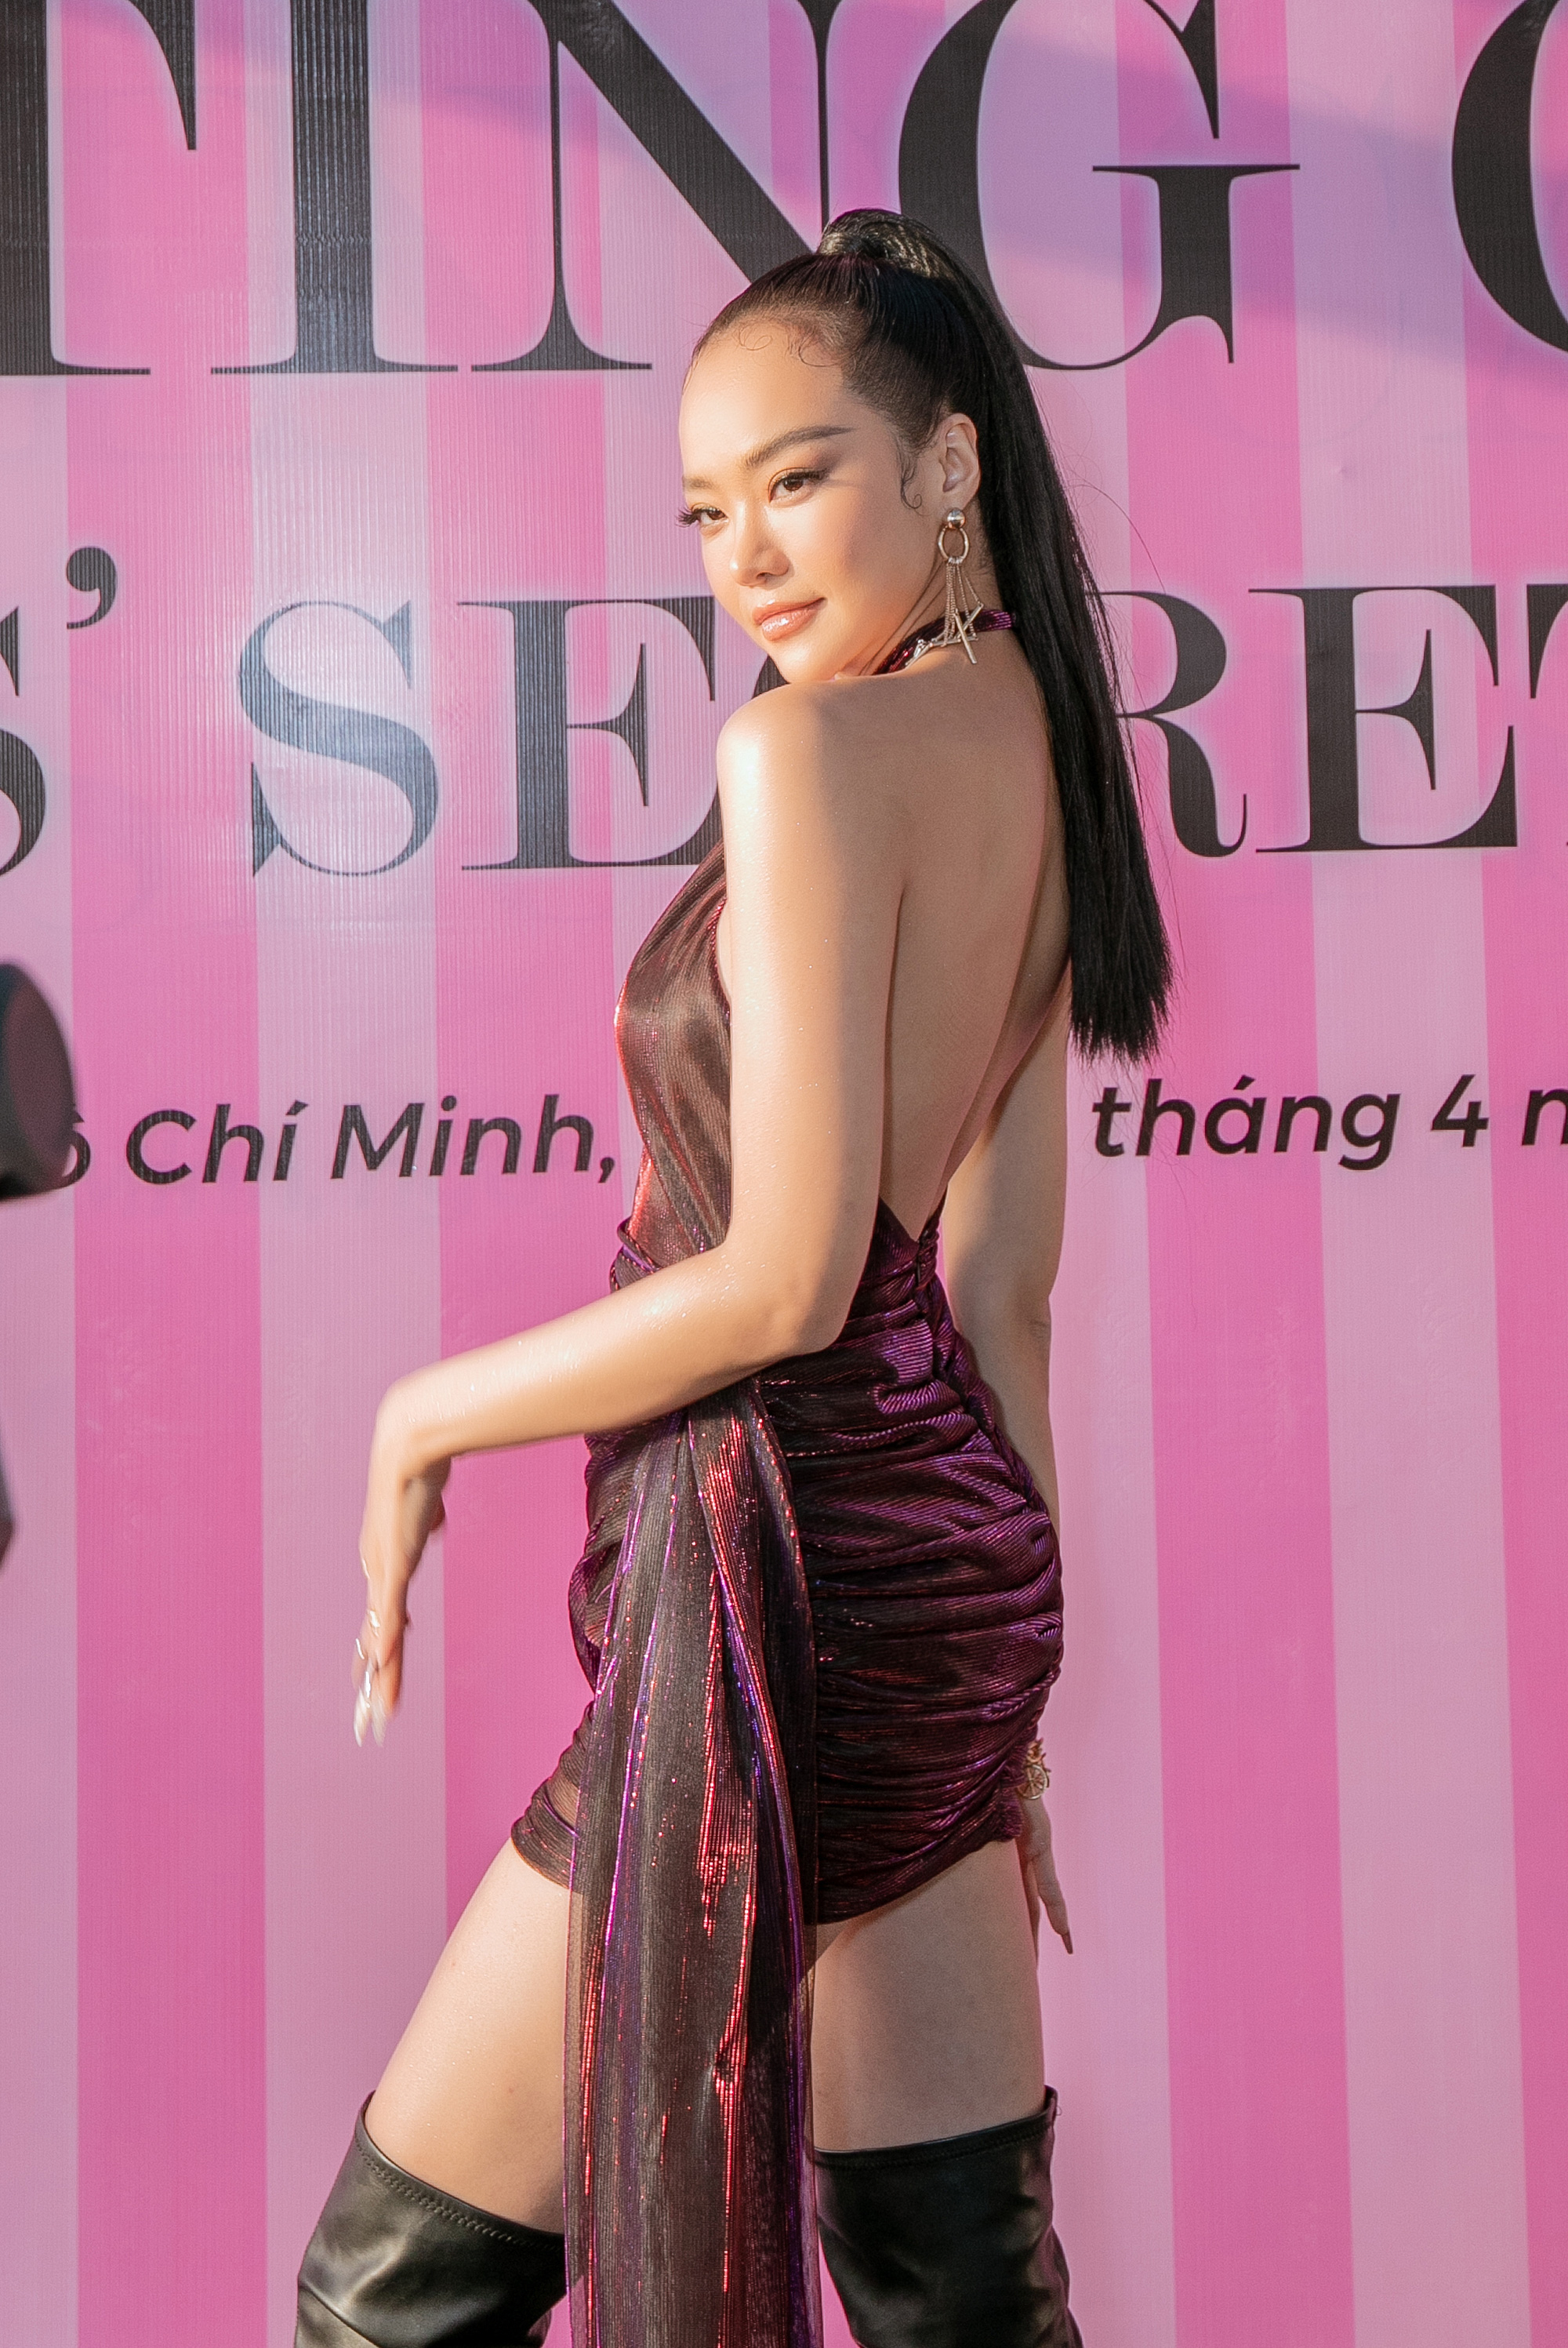 Ngọc Trinh xuất hiện với váy xẻ táo bạo, casting tuyển người mẫu nội y  - Ảnh 7.